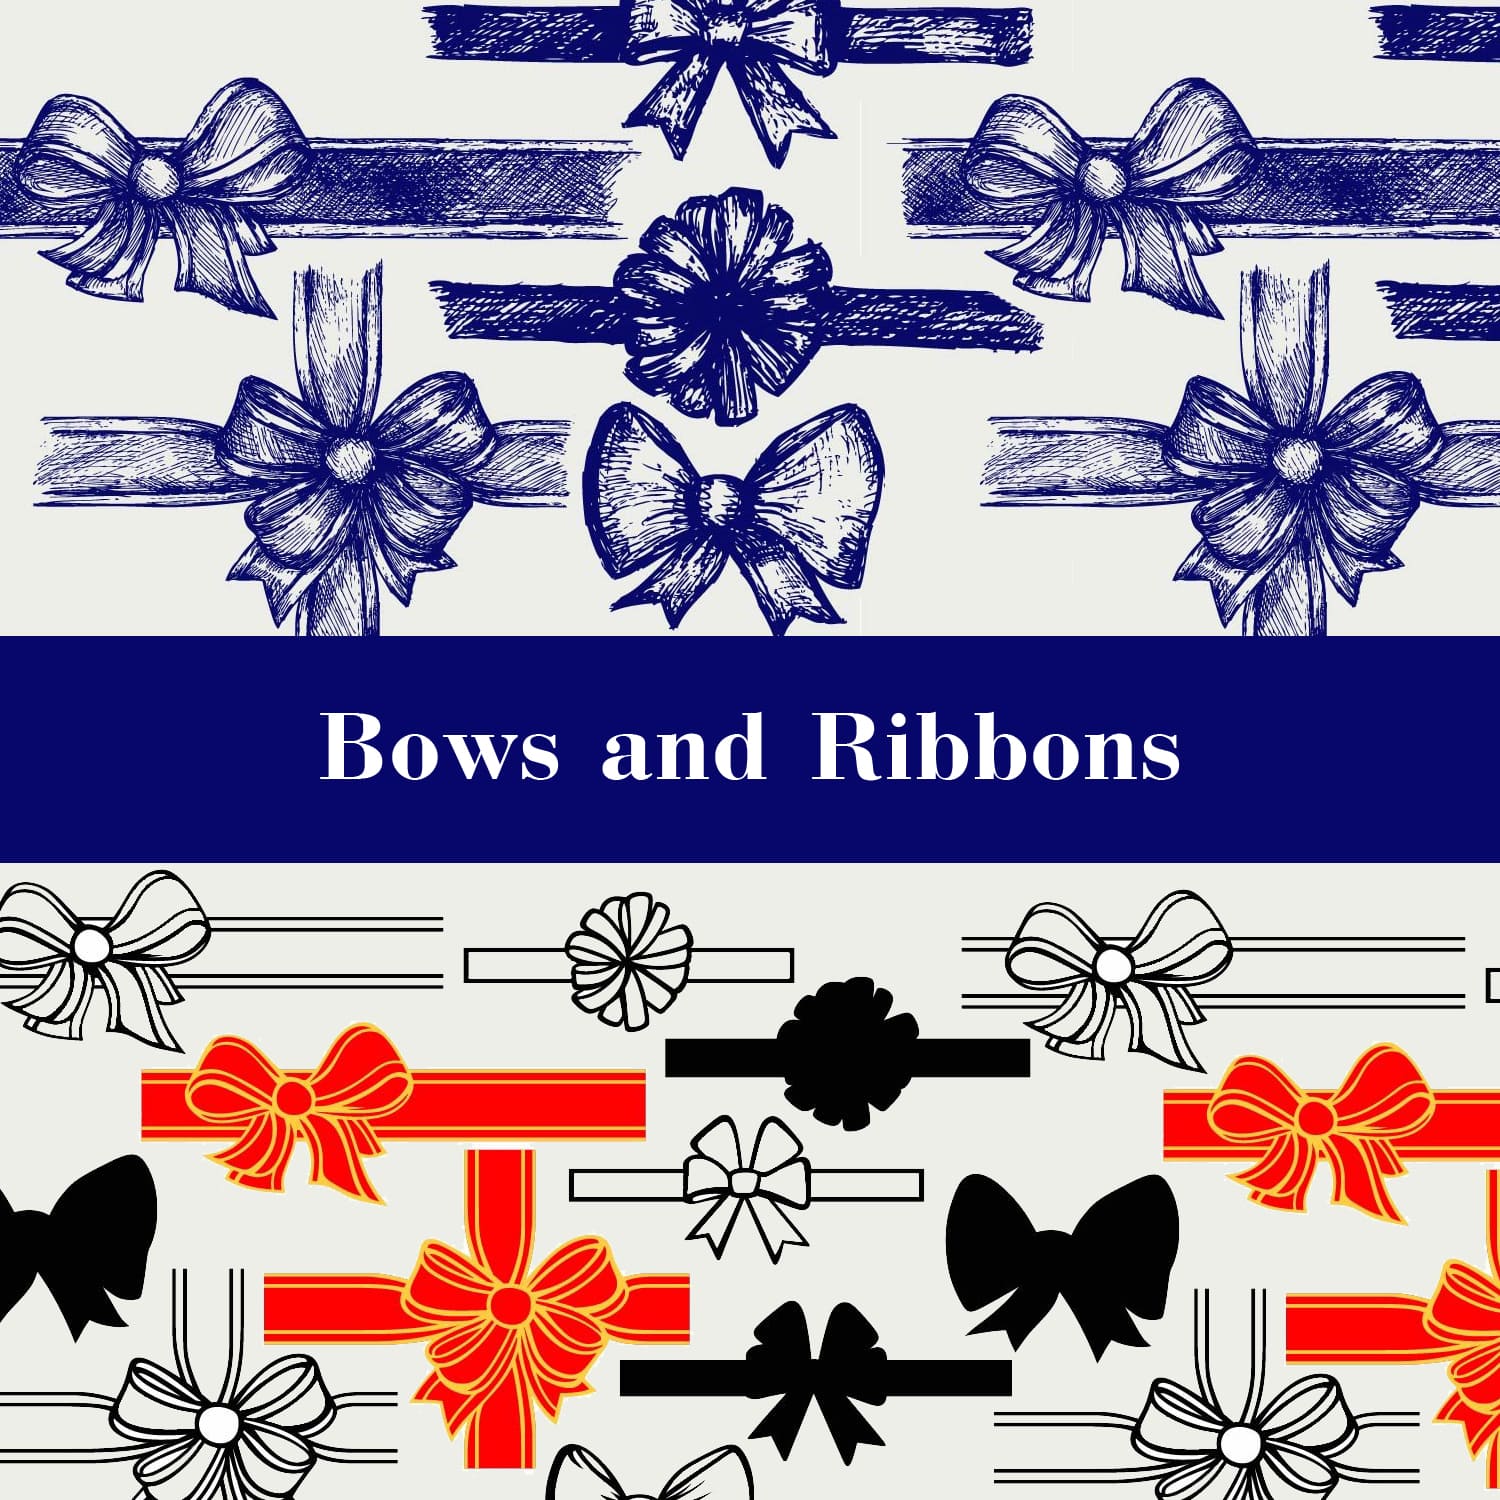 Bows and Ribbons.